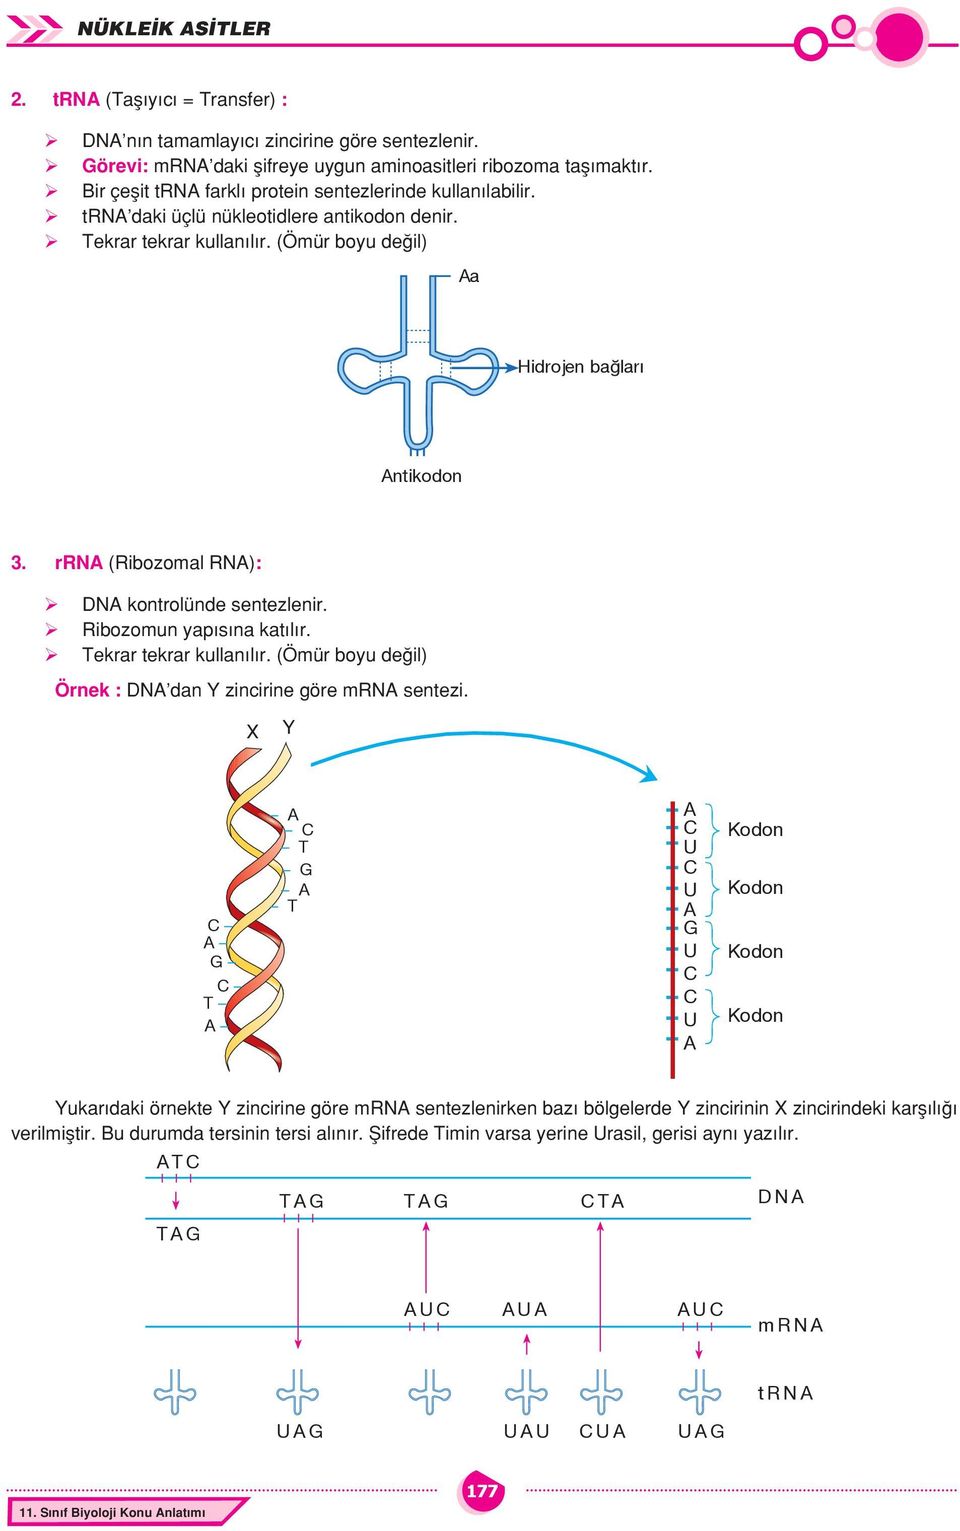 rrn (Ribozomal RN): DN kontrolünde sentezlenir. Ribozomun yapısına katılır. Tekrar tekrar kullanılır. (Ömür boyu değil) Örnek : DN dan Y zincirine göre mrn sentezi.